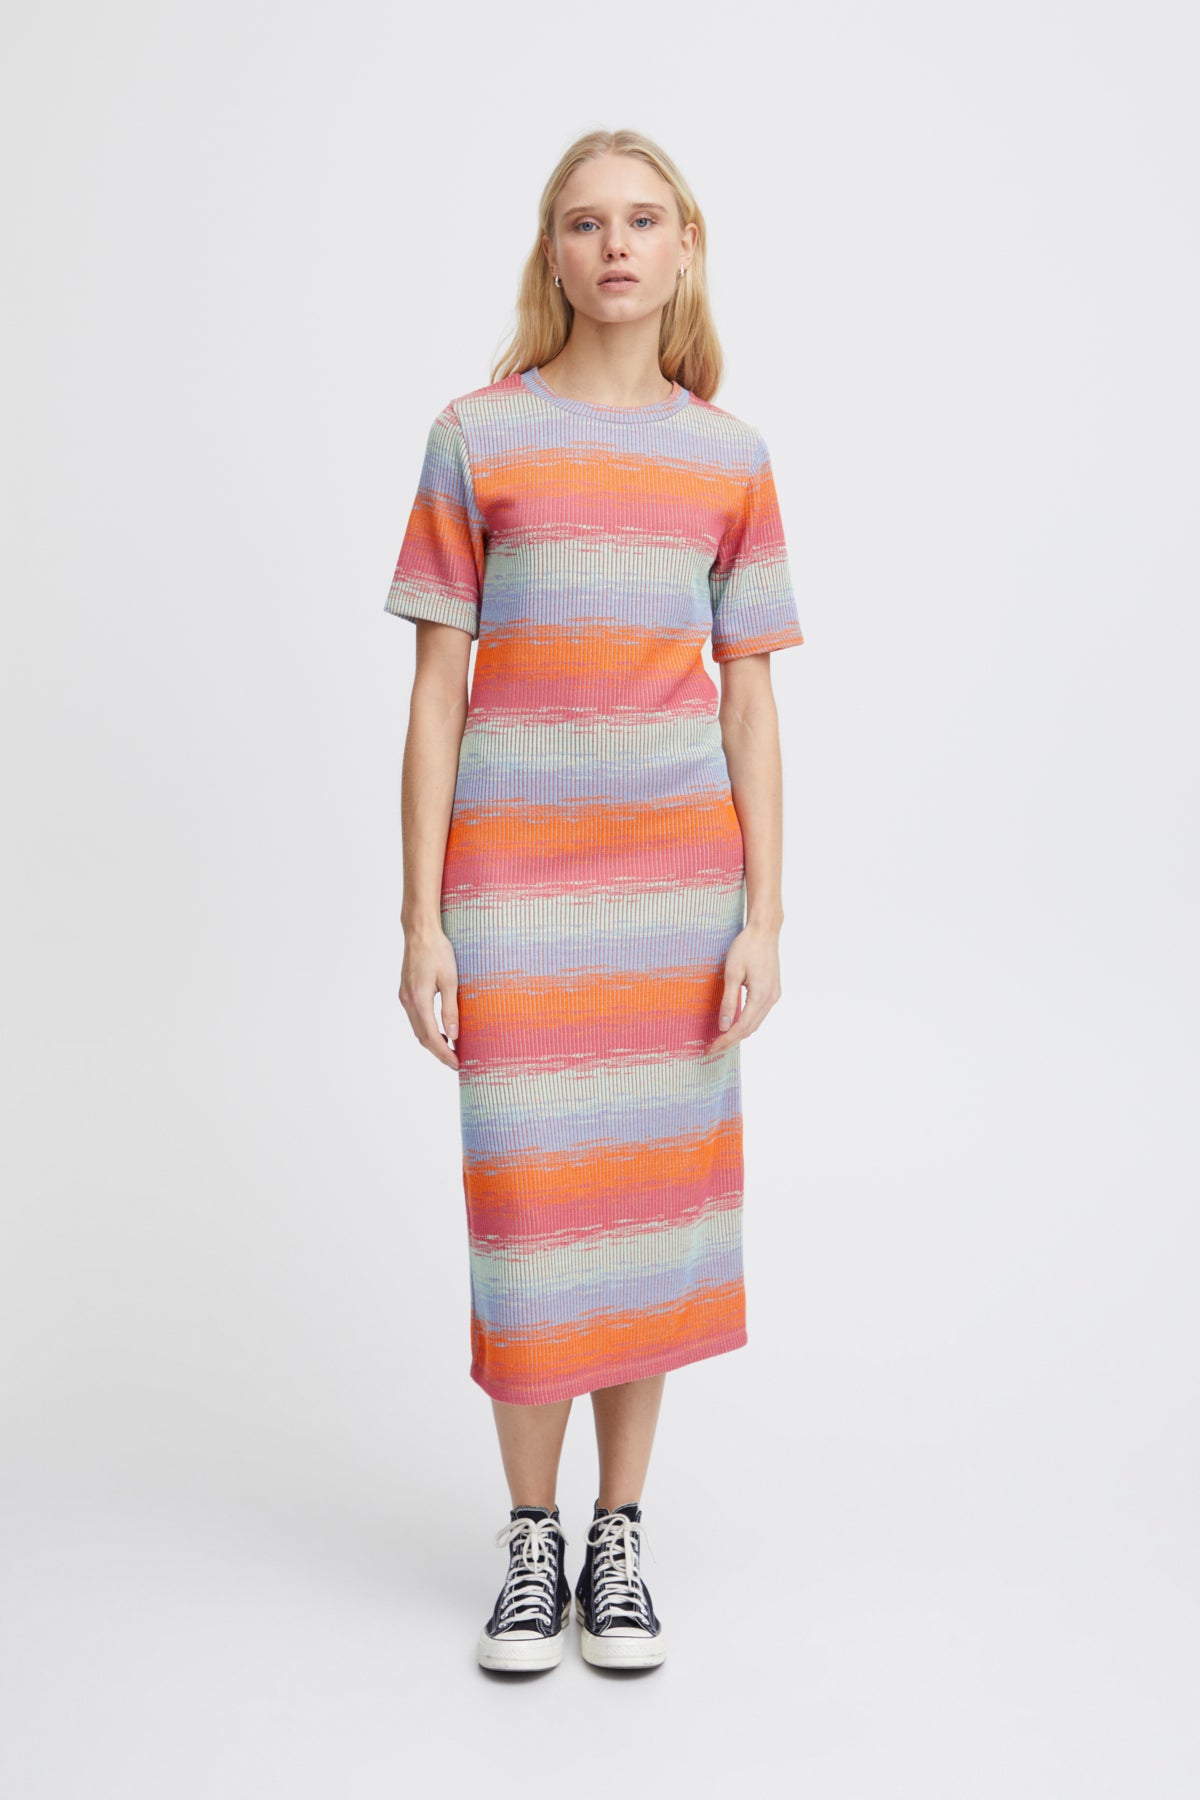 Odela Dress in Multi Colour